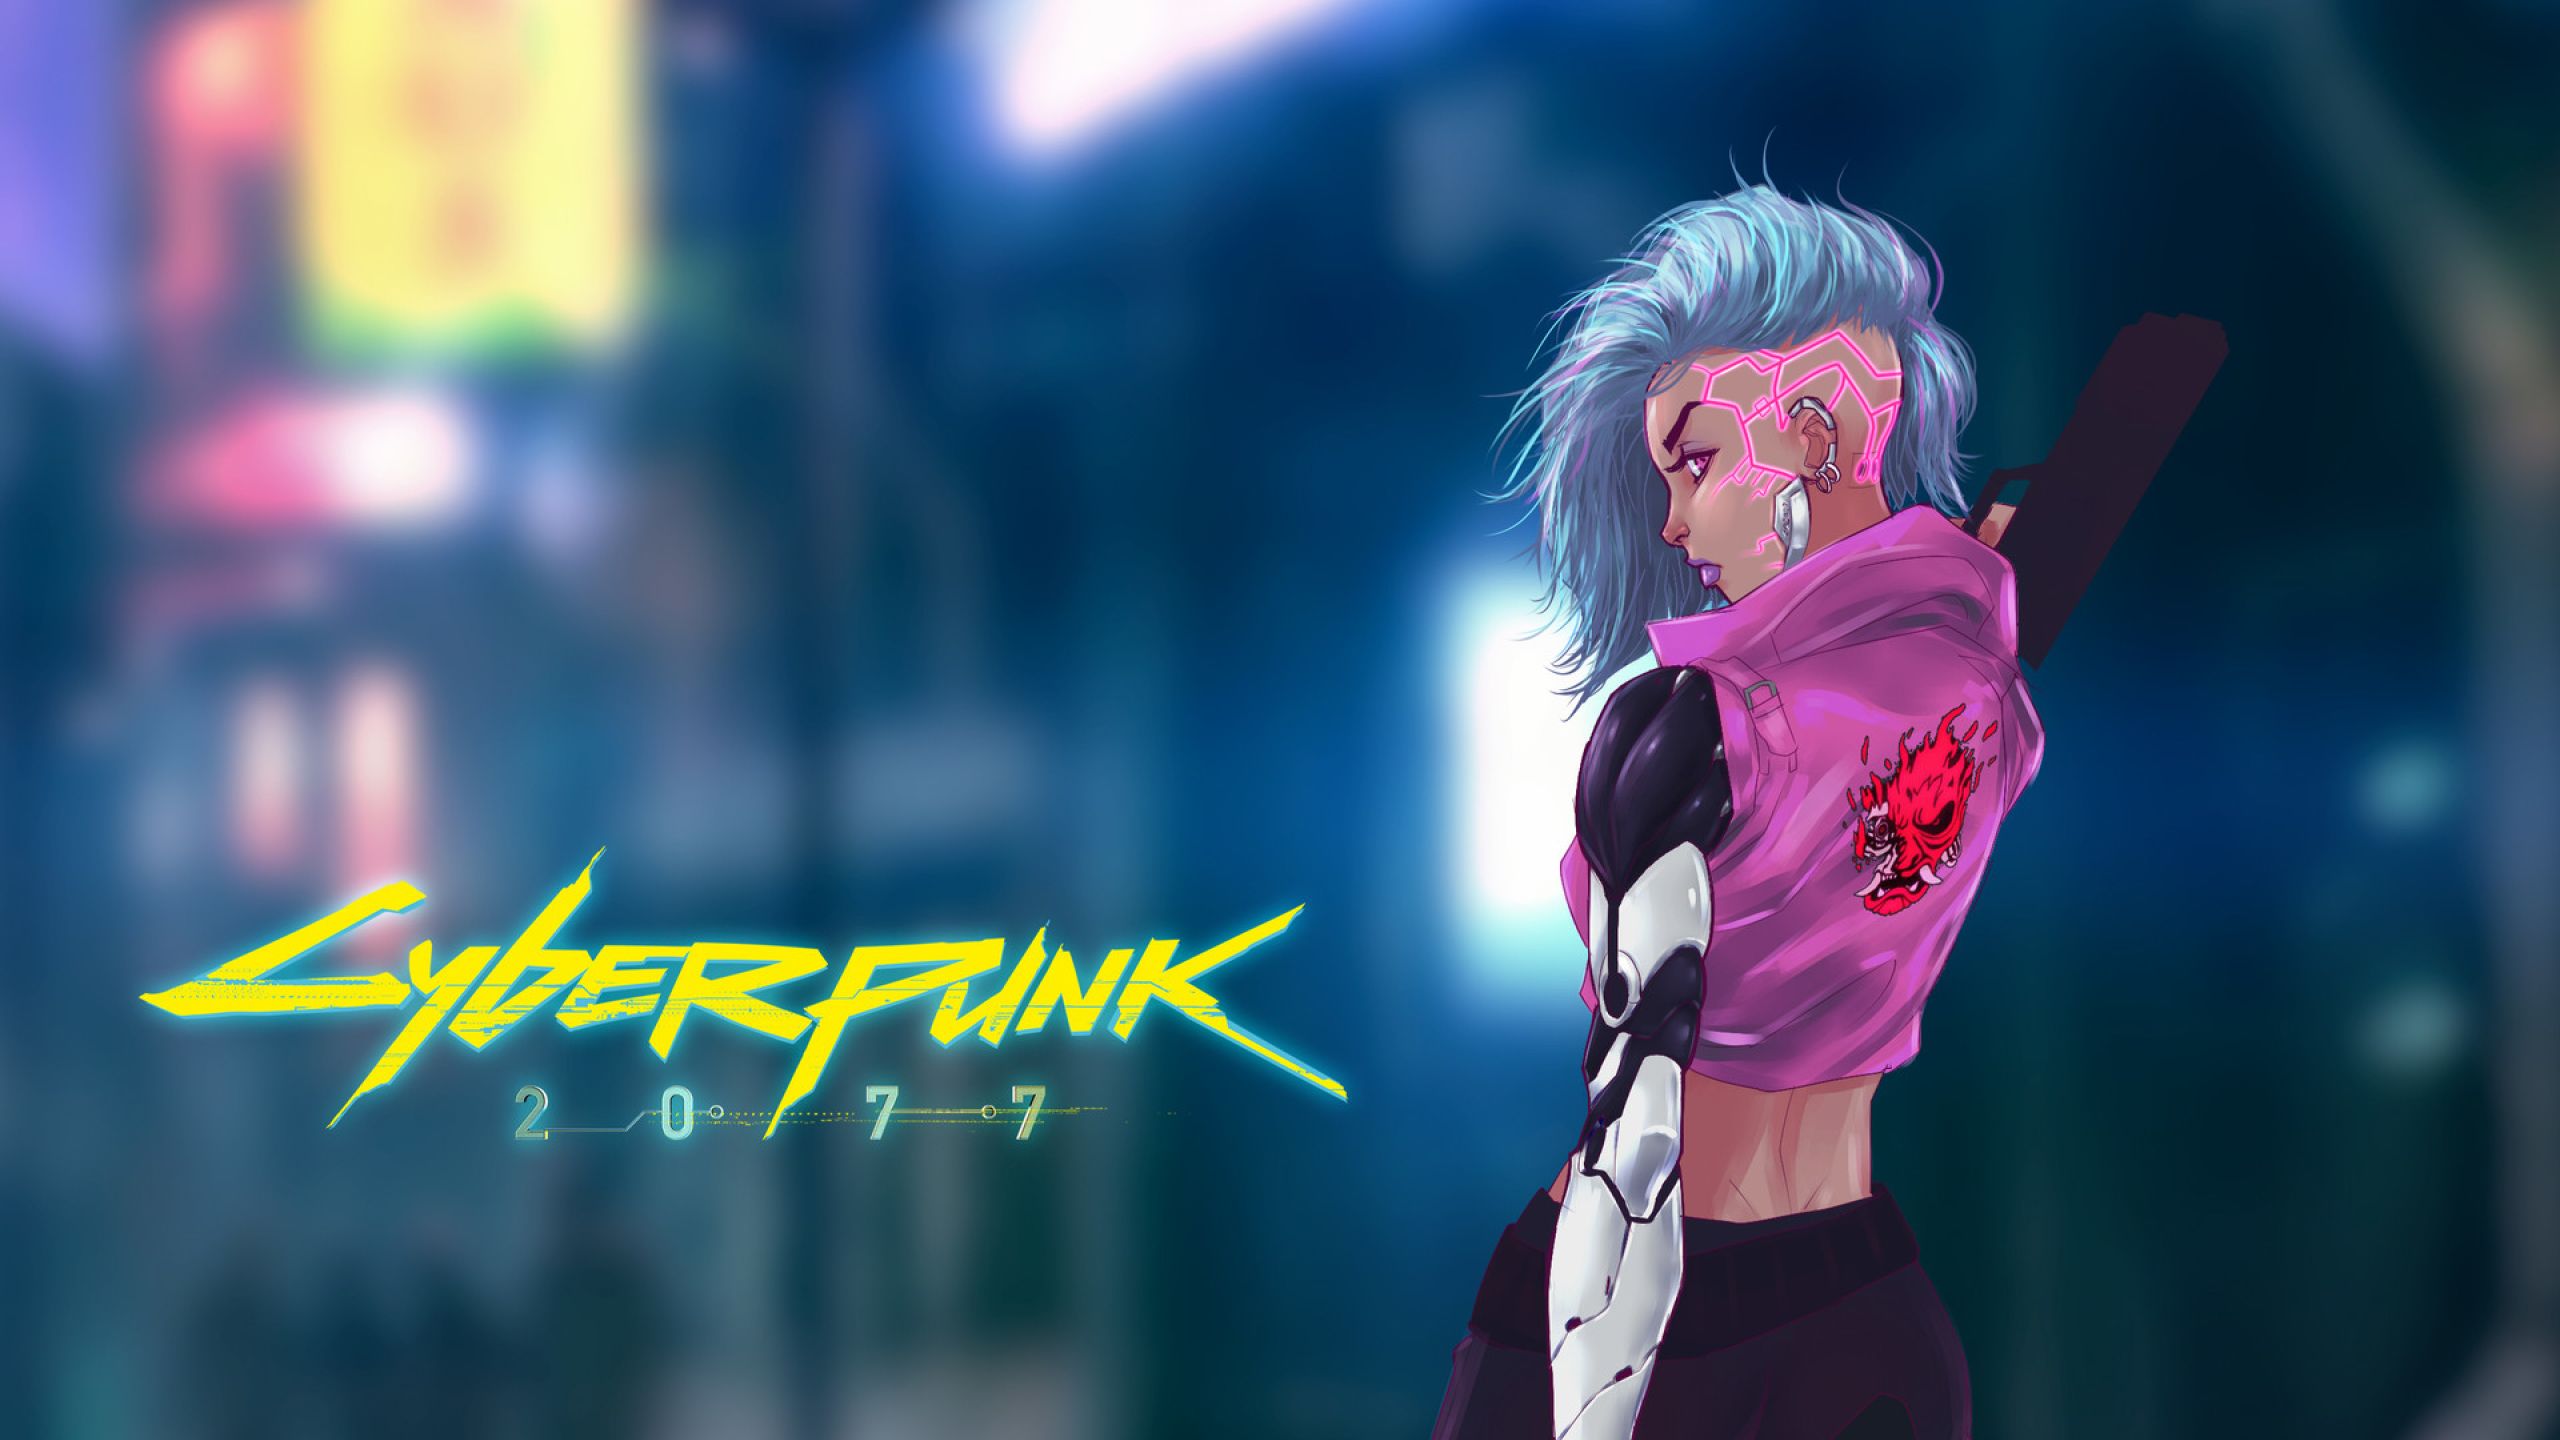 Cyberpunk 2077 Girl Art New .wallpaperden.com